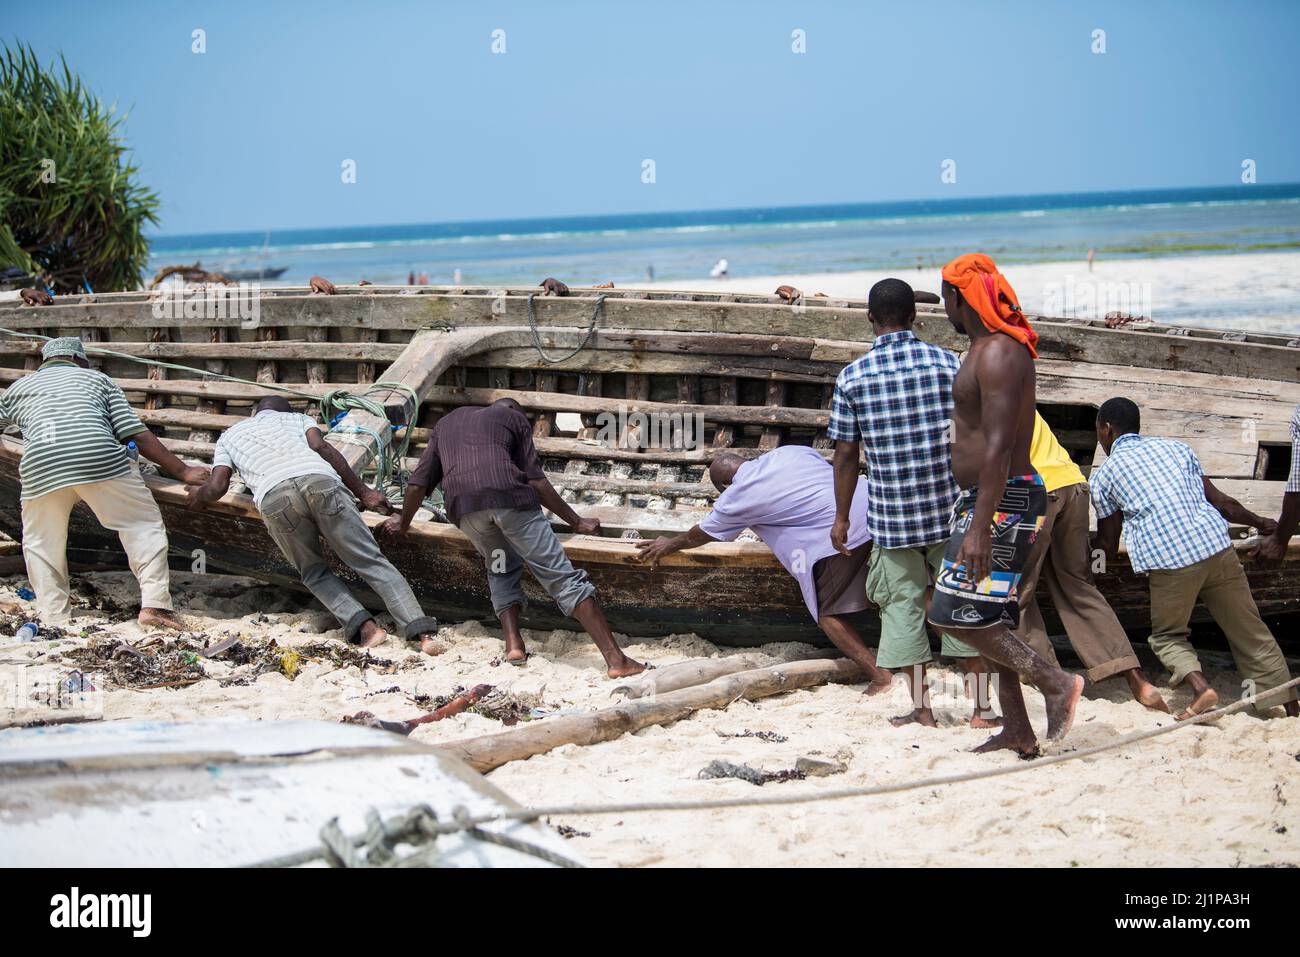 Zanzibar City, Tanzania-January 02,2019: Local fishermen are repairing their boats on the beach of Zanzibar Island. Stock Photo